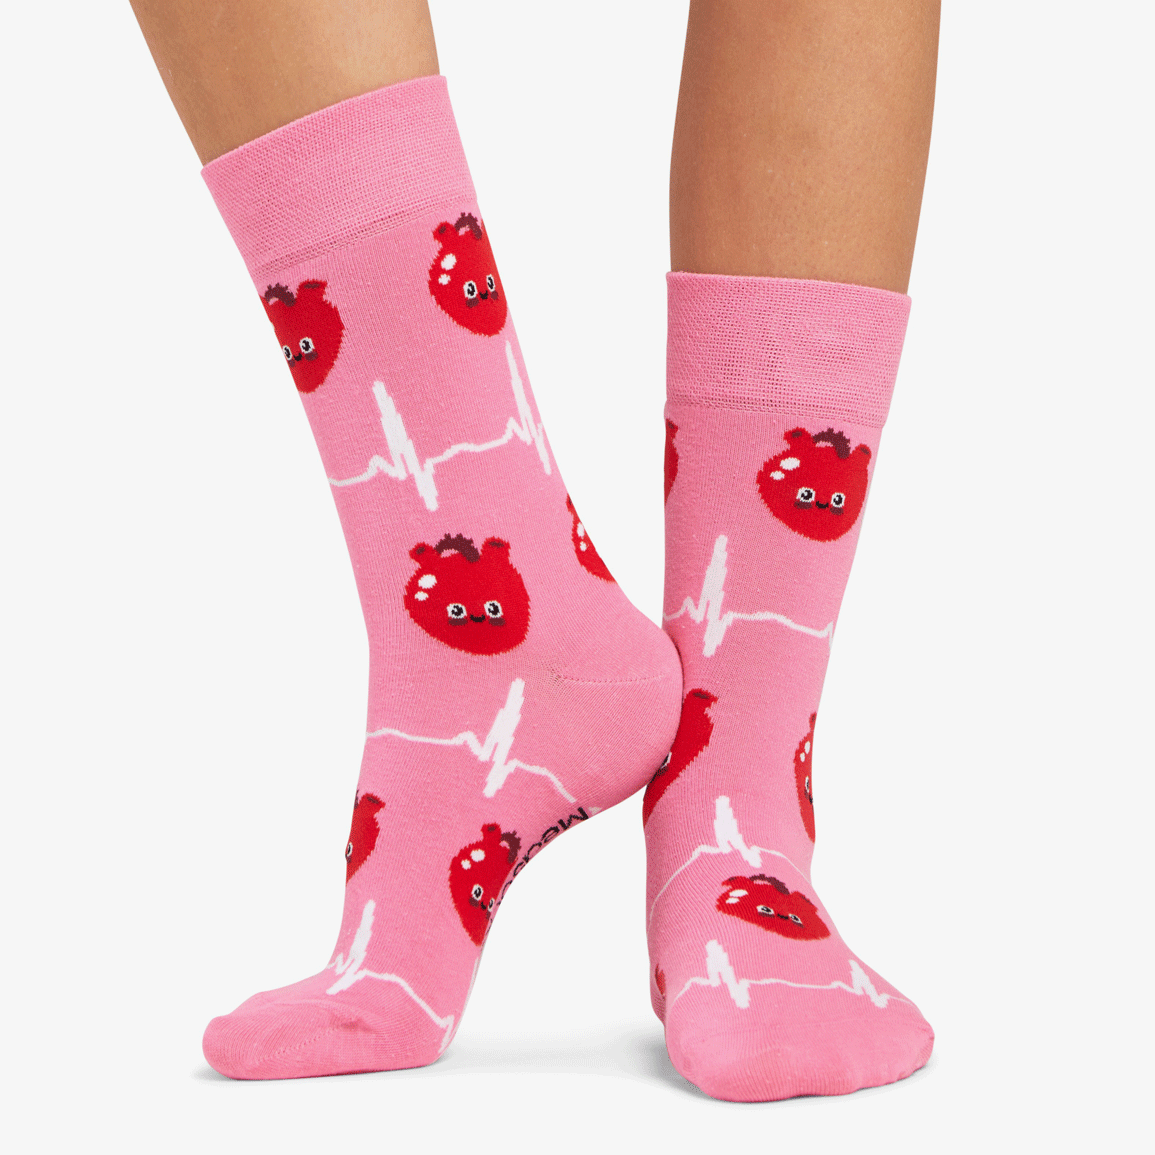 Härzige ❤️ Herz Socken pink